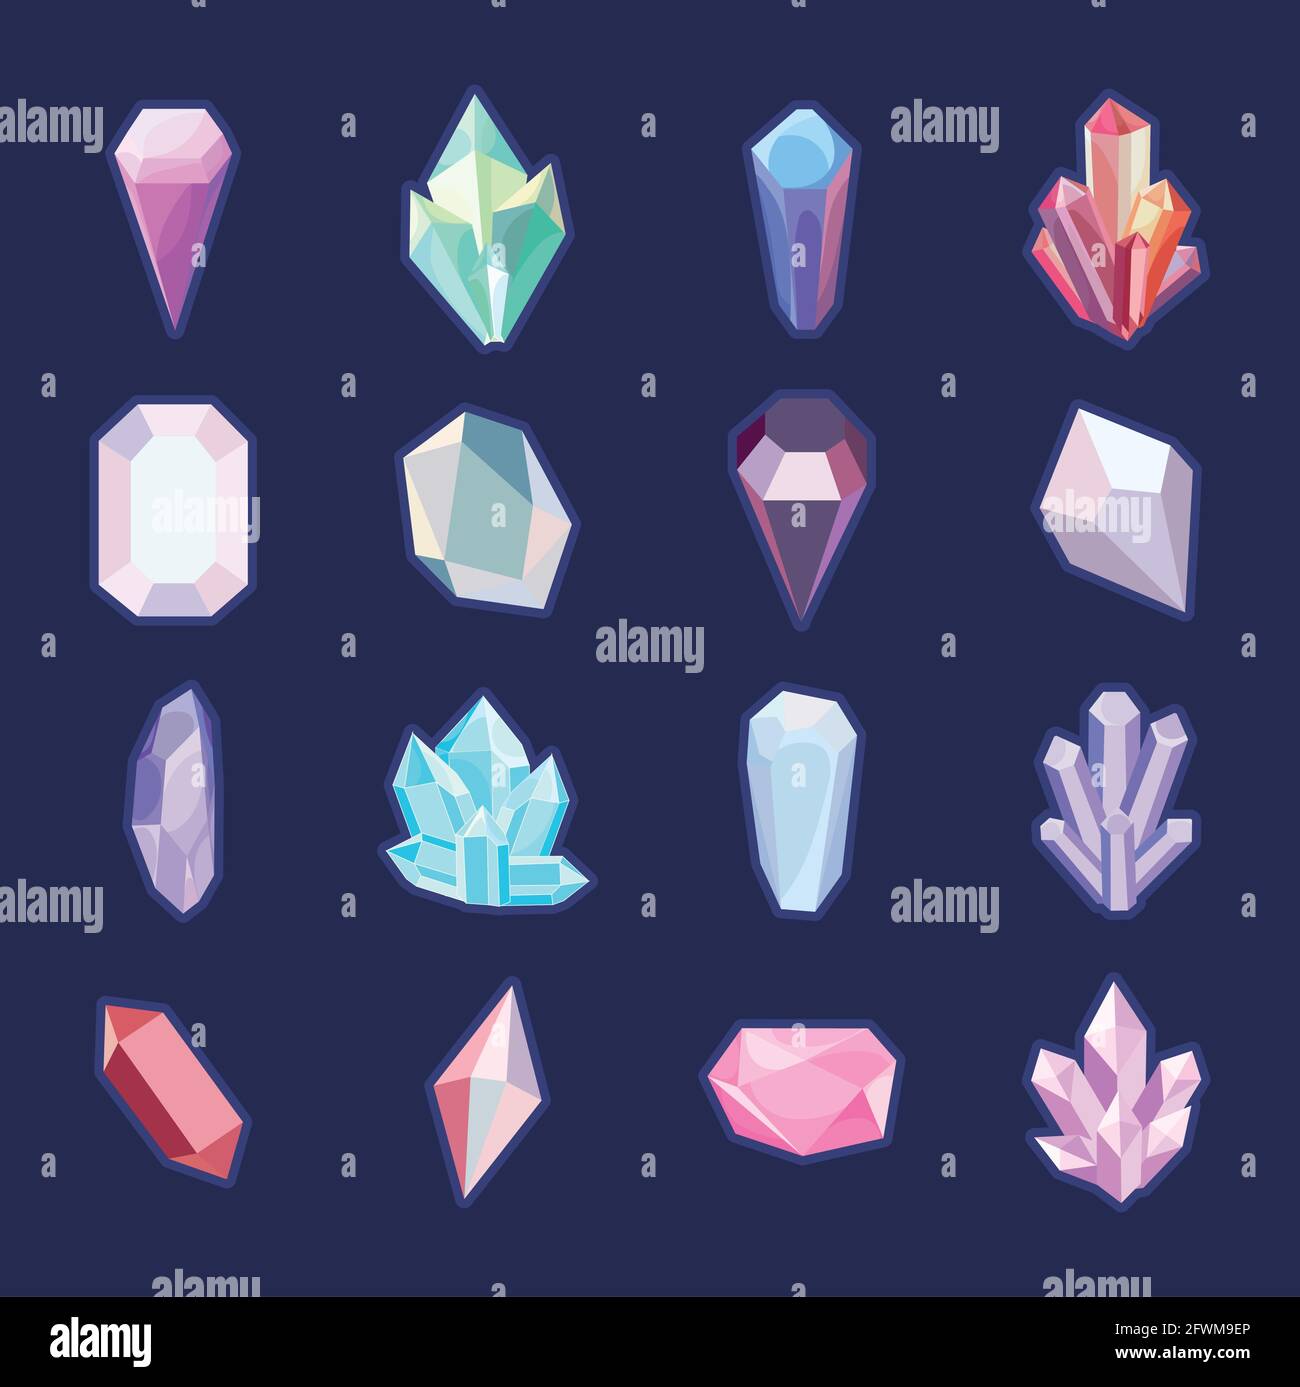 crystals drawing